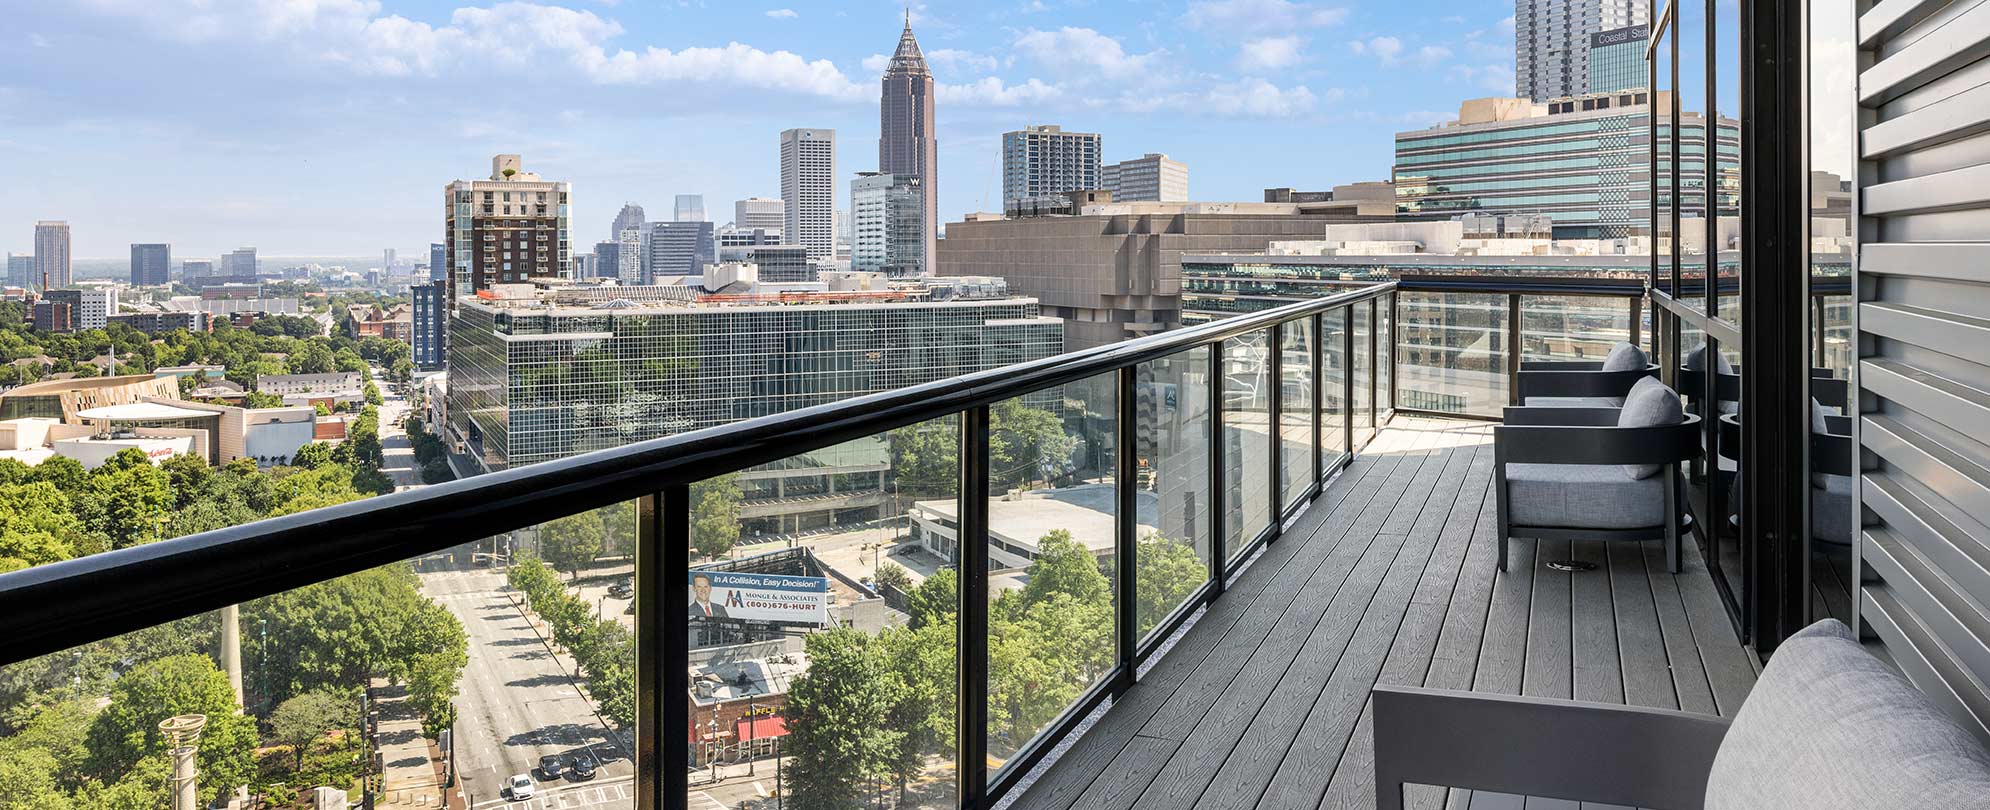 Balcony - Club Wyndham Atlanta